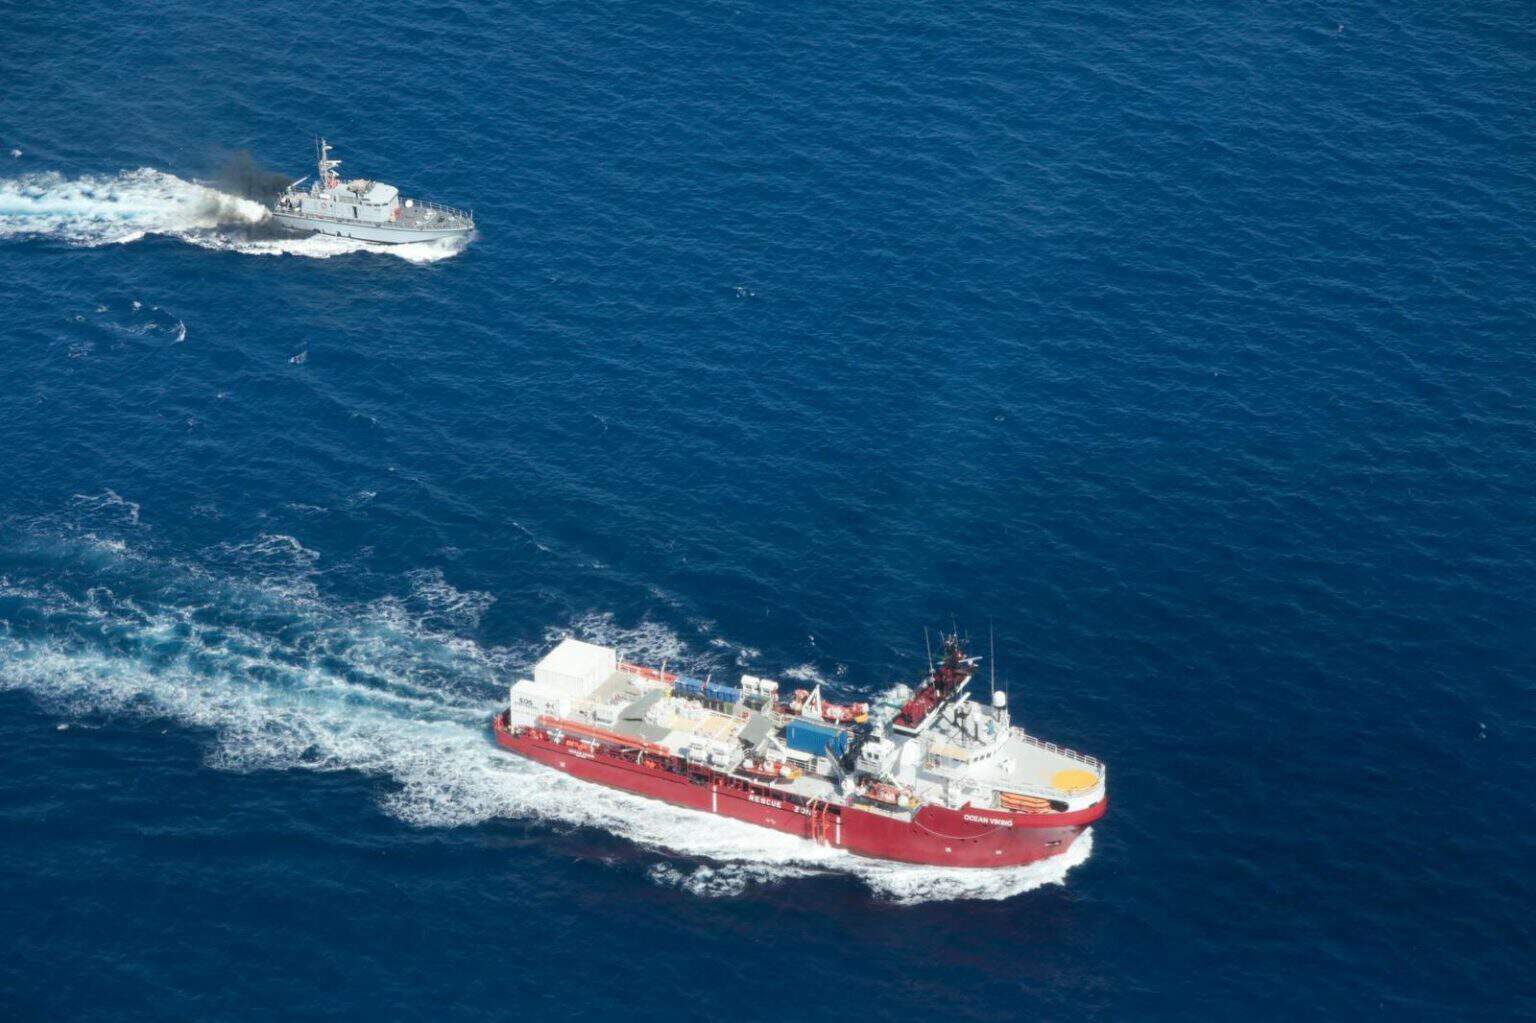 Guardia costiera libica spara e mette in pericolo equipaggio e naufraghi. Ferma condanna di SOS MEDITERRANEE.